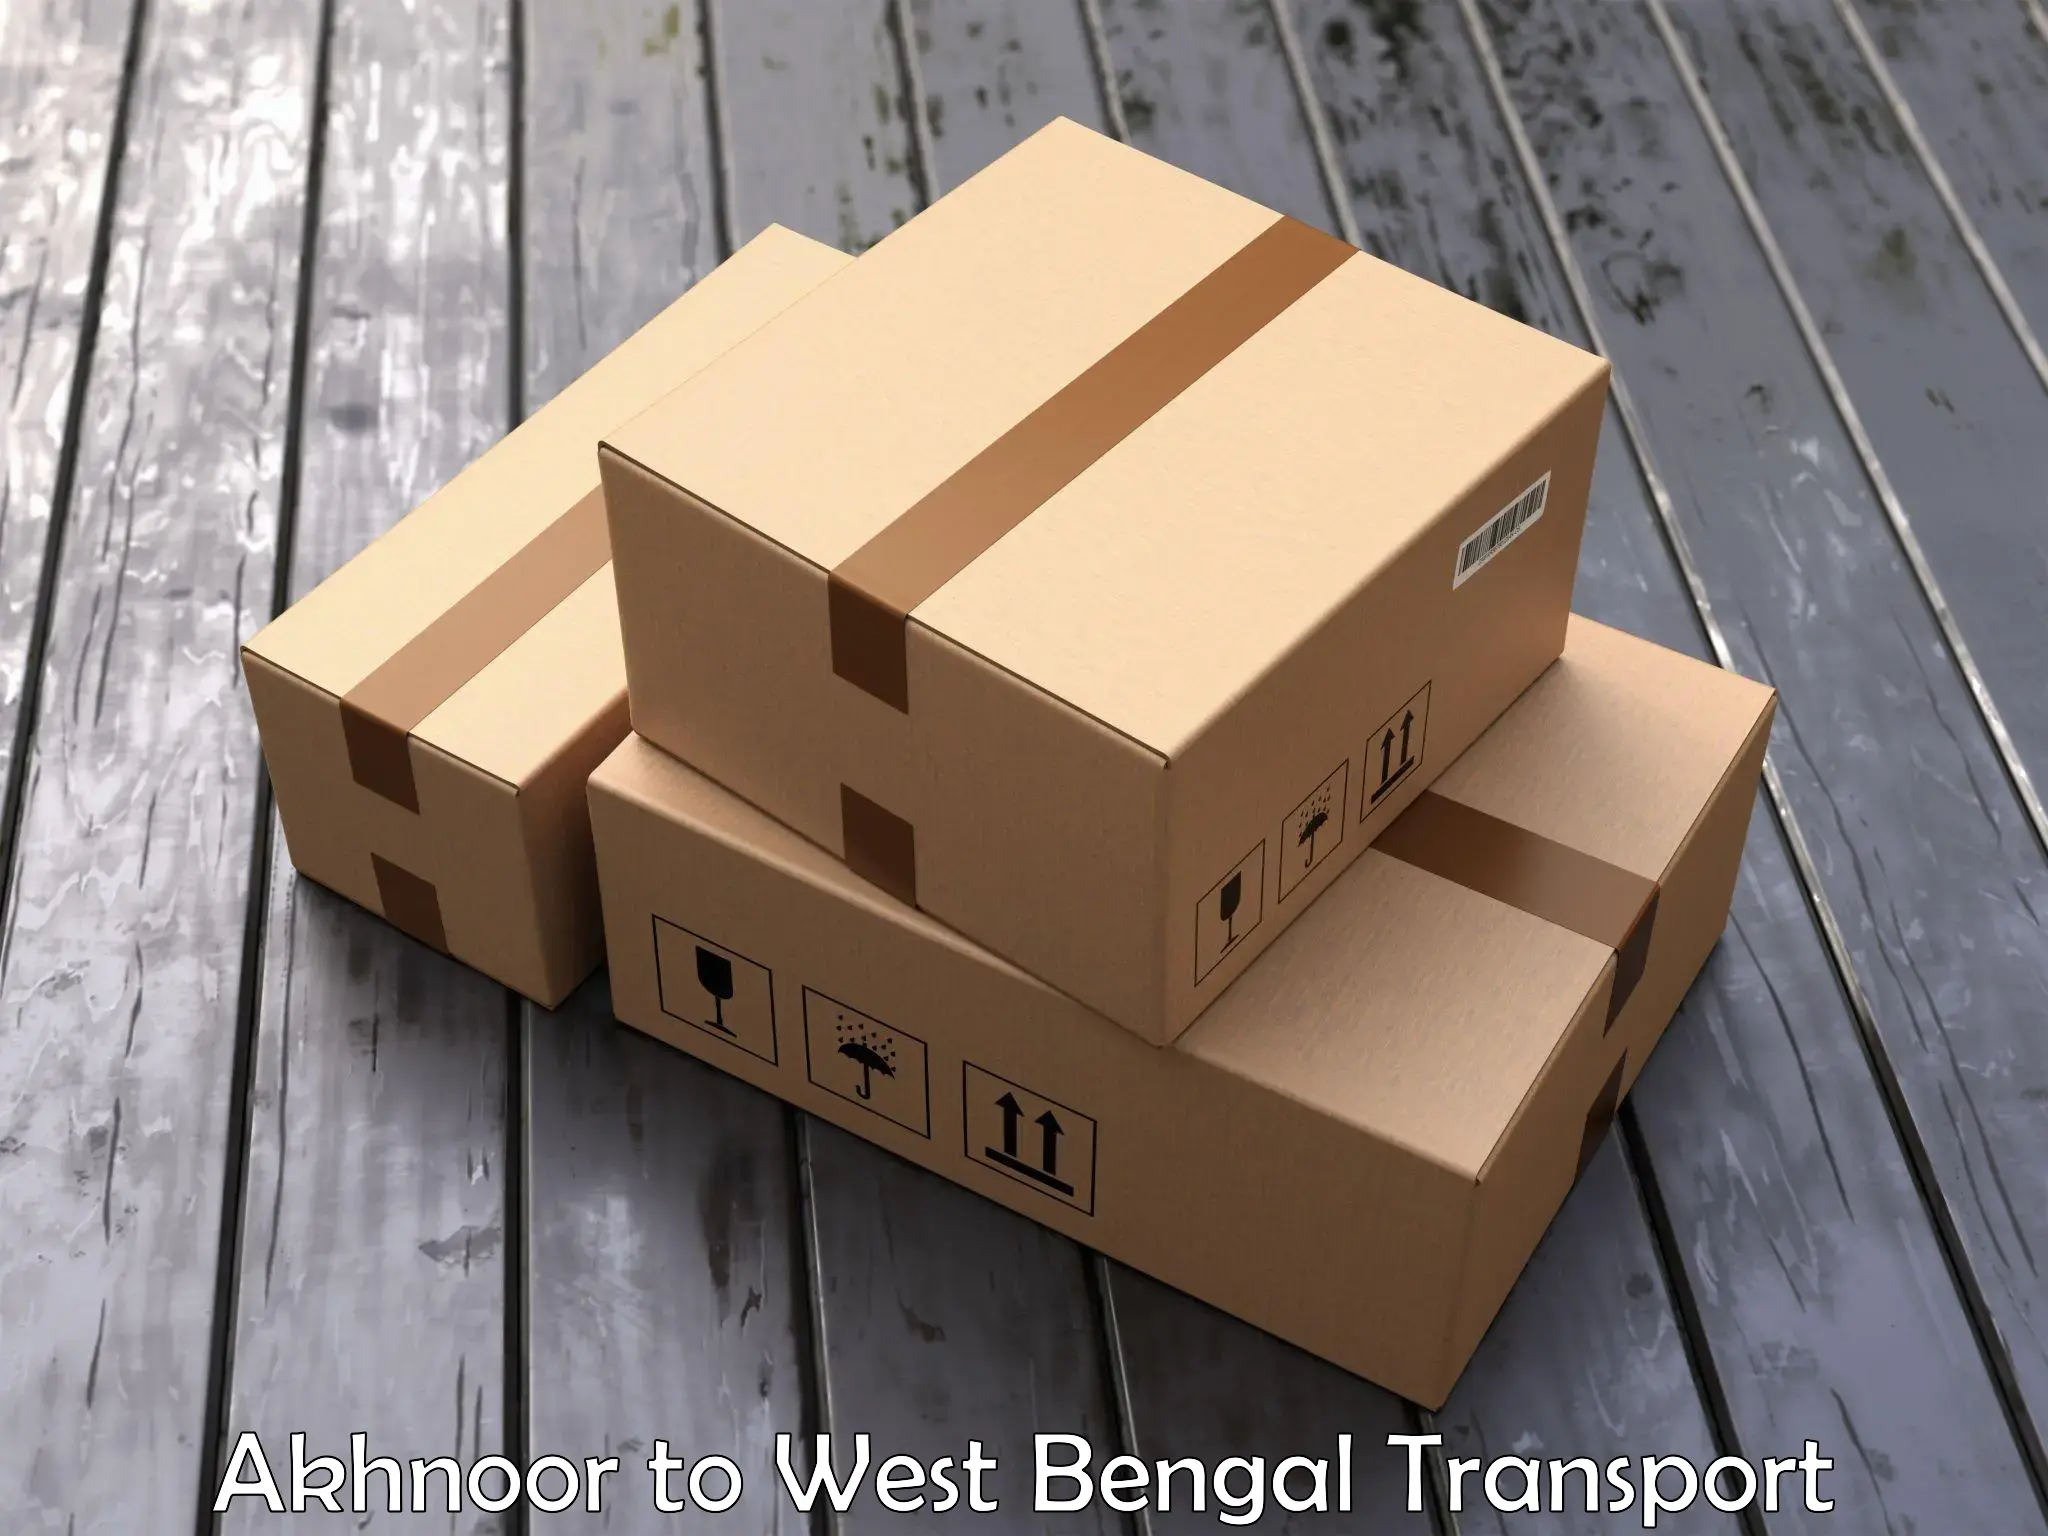 Cargo train transport services Akhnoor to Bardhaman